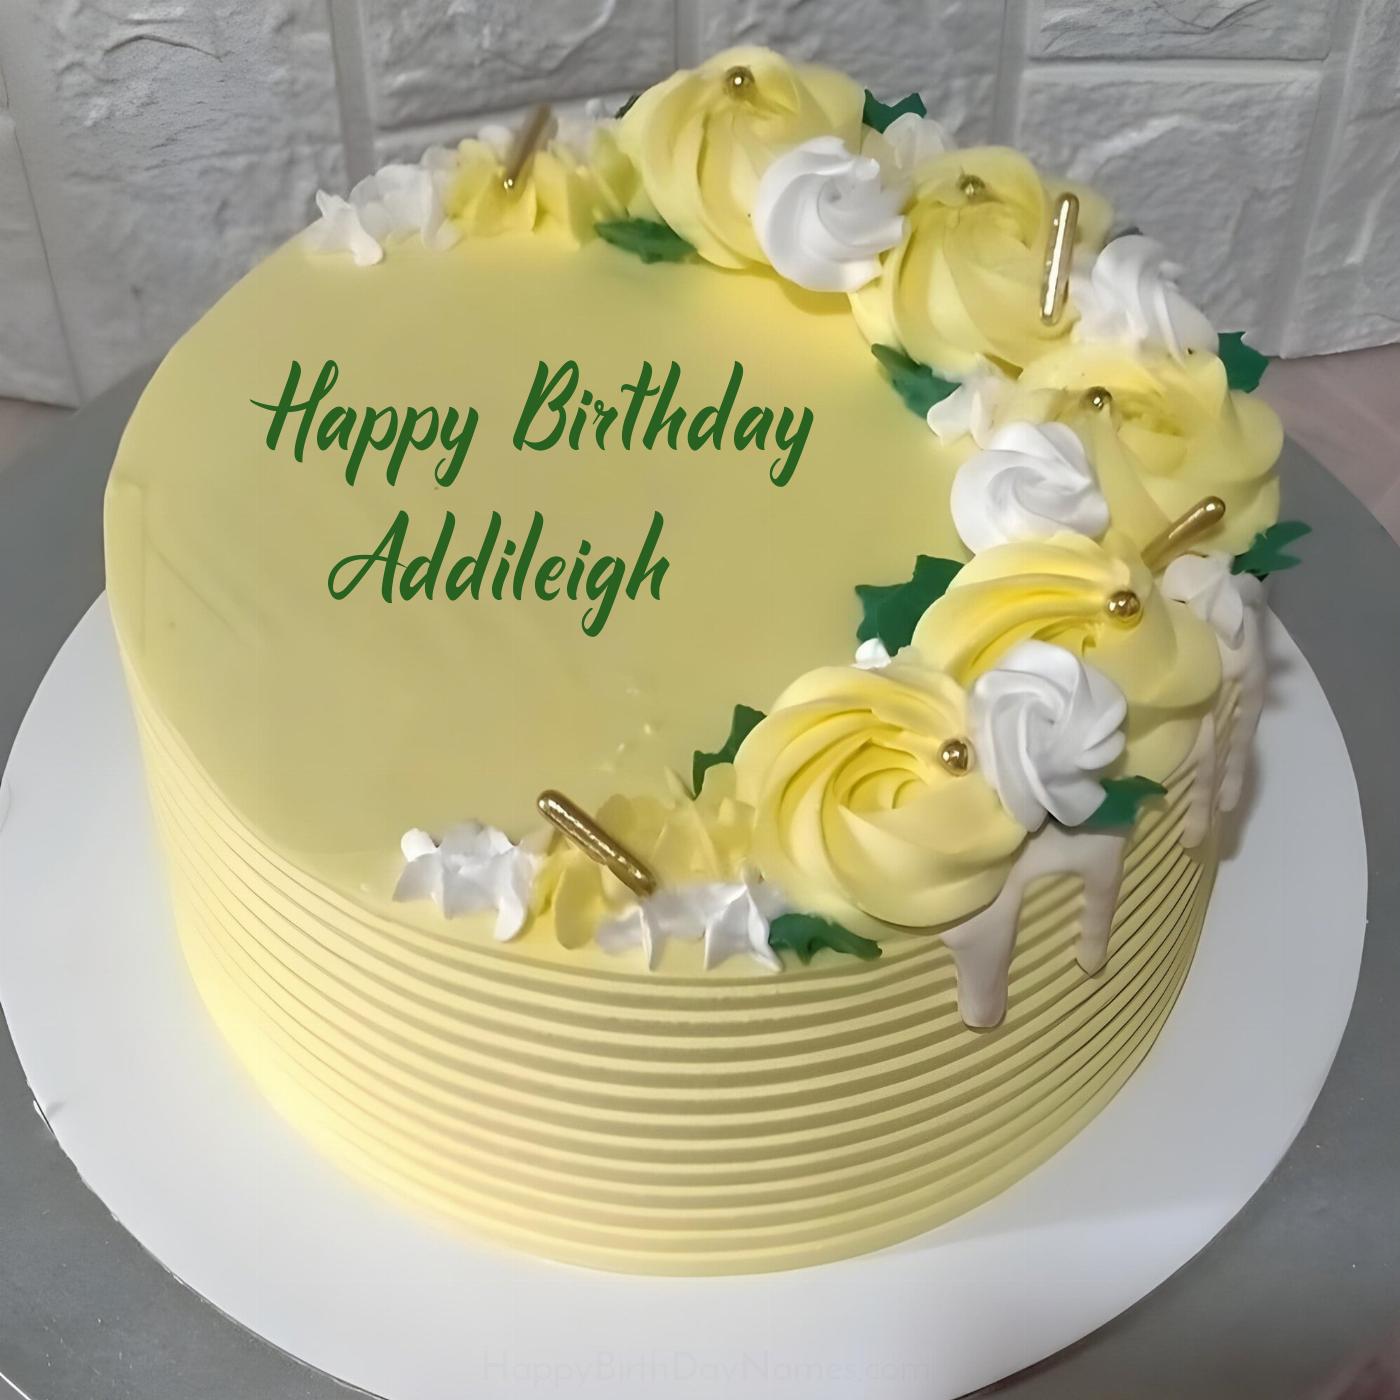 Happy Birthday Addileigh Yellow Flowers Cake